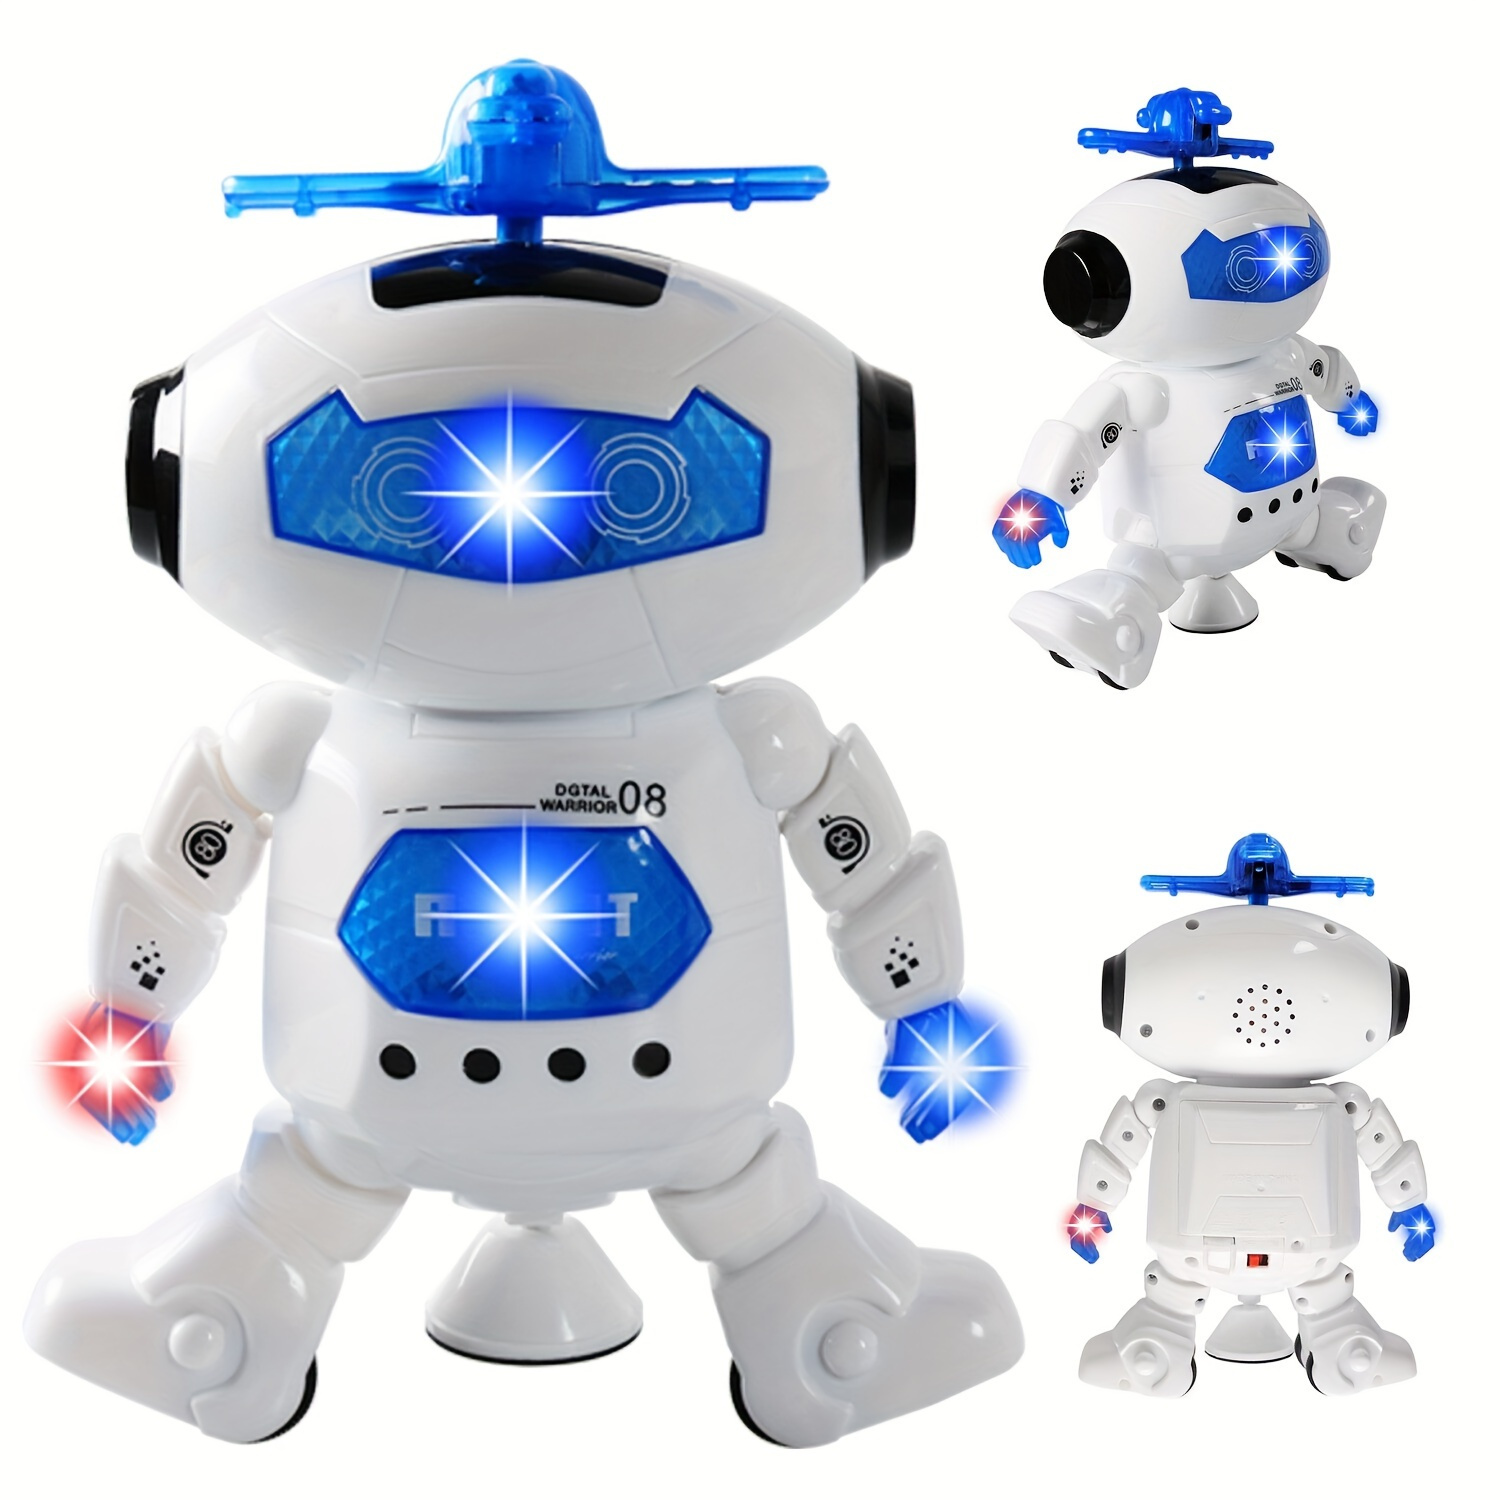 

Musical Walking Dancing Robot Toy, Flashing Lights, 360° Body Spinning, Toddlers Boys Girls Fun Toy Figure